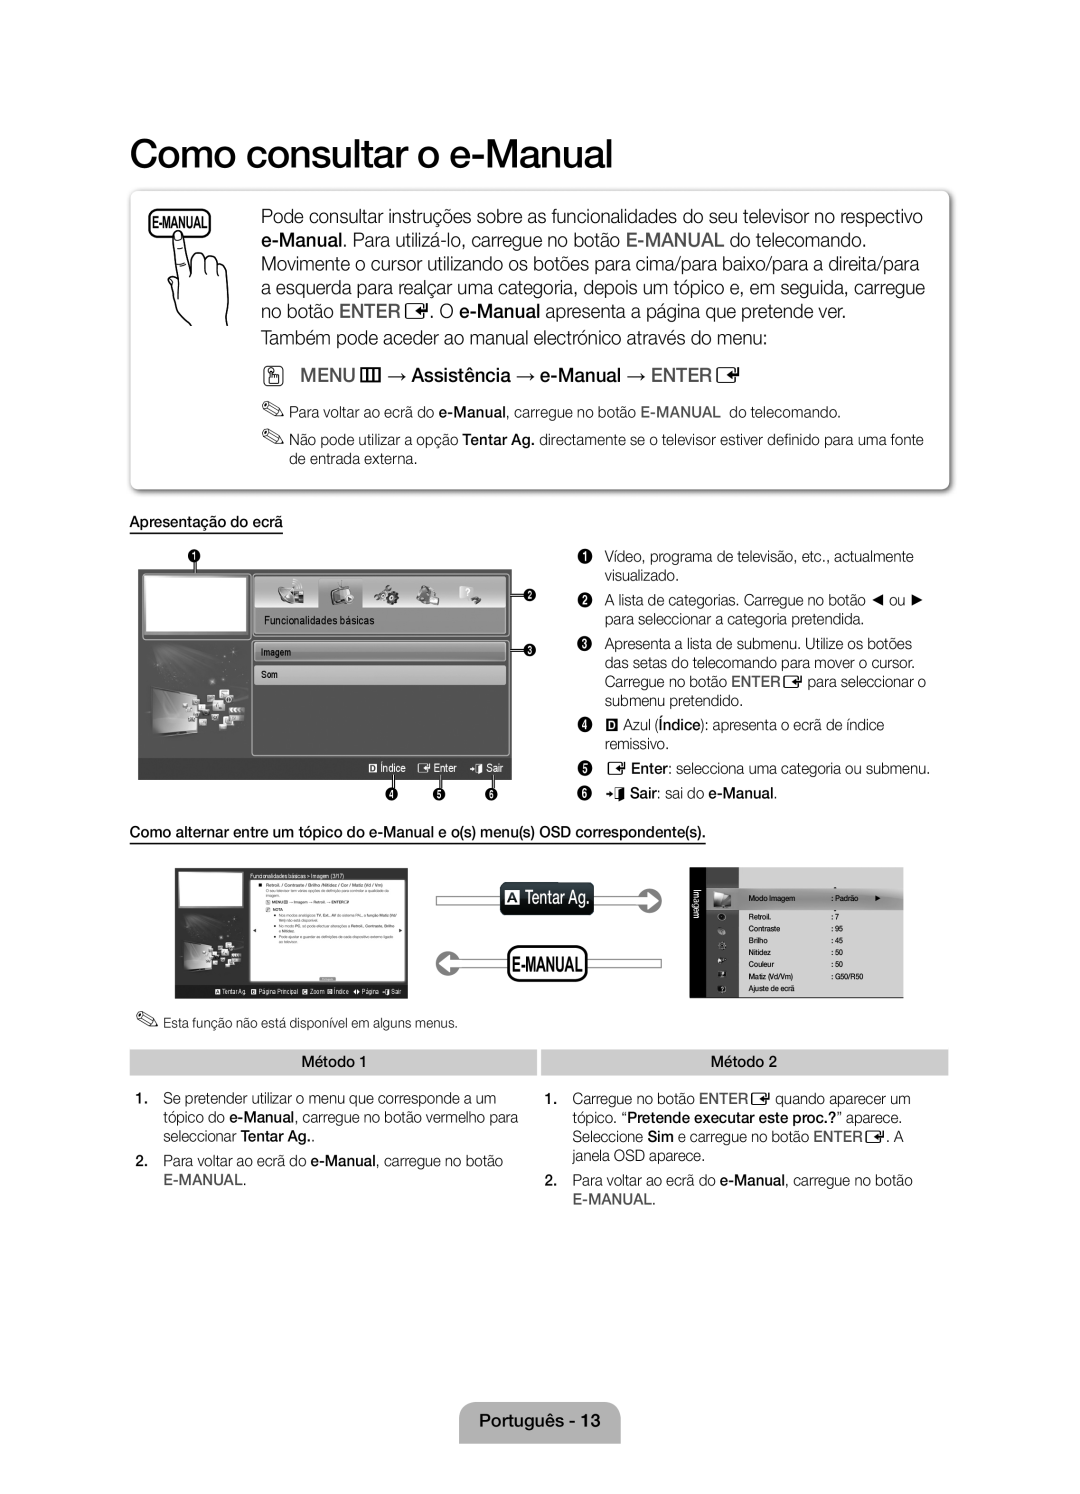 Samsung UE46D5000PWXXC manual Como consultar o e-Manual, no botão ENTER E. O e-Manual apresenta a página que pretende ver 